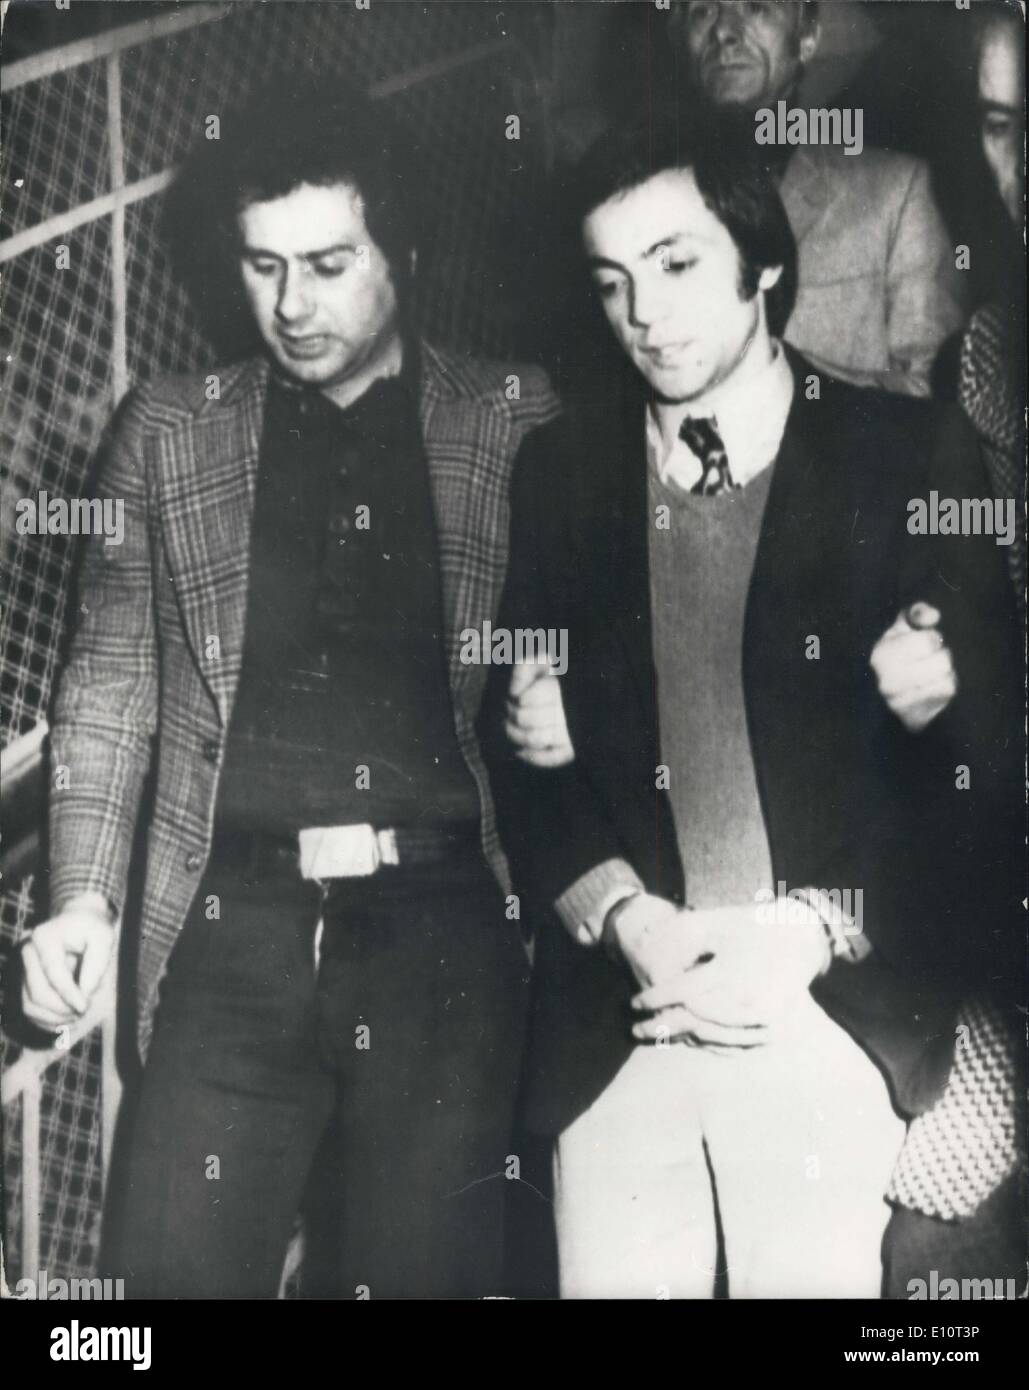 16 janvier 1974 - arrestations en lien avec l'enlèvement de Paul Getty III : Trois personnes ont été arrêtées aujourd'hui dans le cadre de l'enlèvement de 17 ans Paul Getty III. La police a déclaré que l'argent, que l'on croit être une partie de l'ordre de 1 millions de rançon payée pour la libération du garçon le mois dernier a été récupéré. Les hommes arrêtés ont été nommés comme Domenico Barbino, 27, Vincenzo Mammoliti, 32, et Antonio Mancuso, 31. Ils sont tous du sud de l'Italie. Photo montre : l'un des hommes arrêtés, Domenico Barbino est, menottes, après son arrestation par la police. Banque D'Images